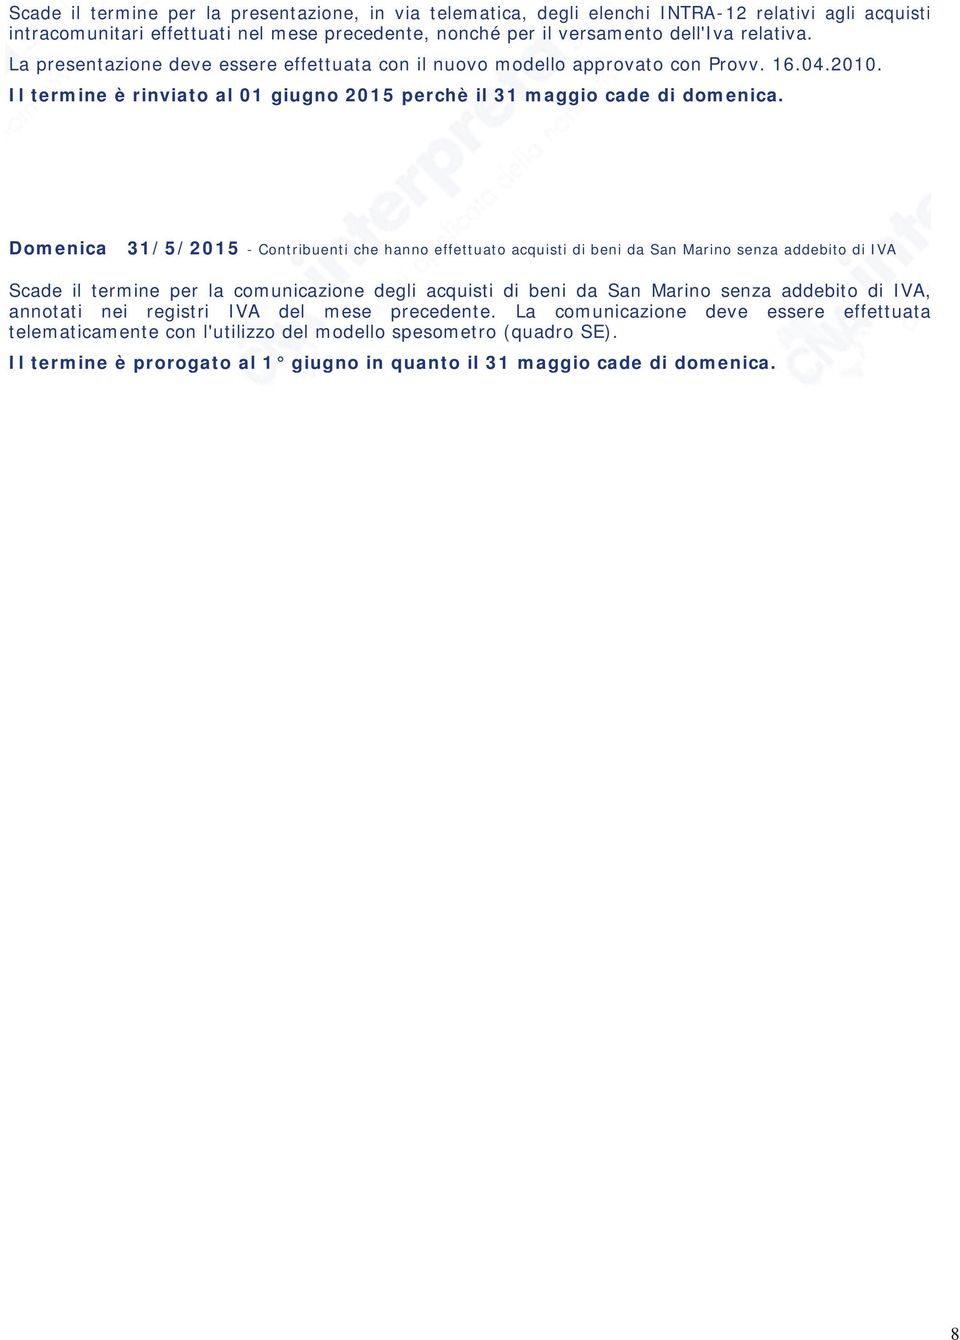 Domenica 31/5/2015 - Contribuenti che hanno effettuato acquisti di beni da San Marino senza addebito di IVA Scade il termine per la comunicazione degli acquisti di beni da San Marino senza addebito